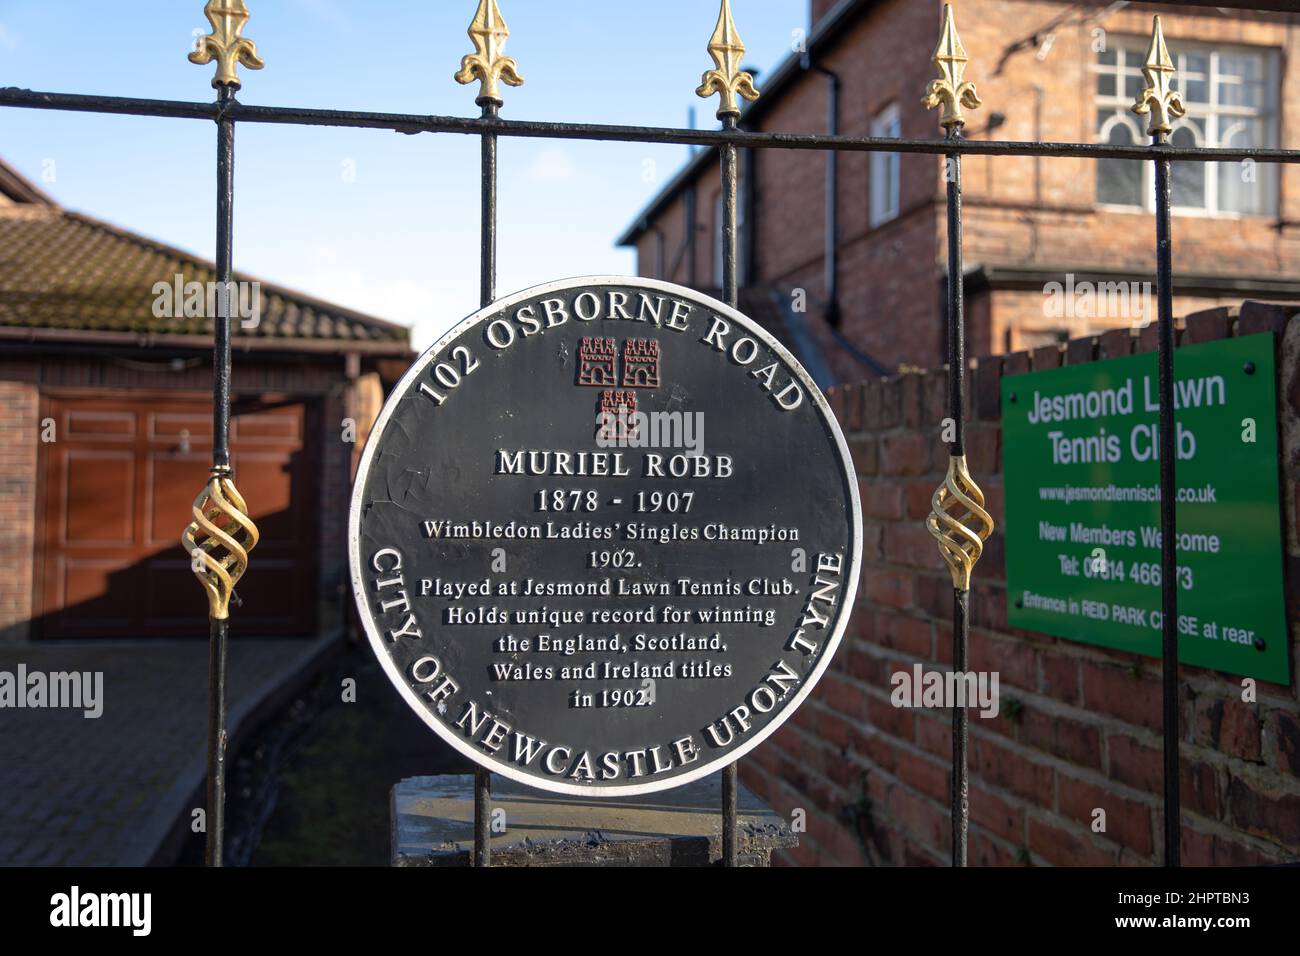 Eine Gedenktafel am Tor des Jesmond Lawn Tennis Club, Newcastle upon Tyne, Großbritannien, erinnert an Muriel Robb, Wimbledon Ladies Singles Champion im Jahr 1902. Stockfoto